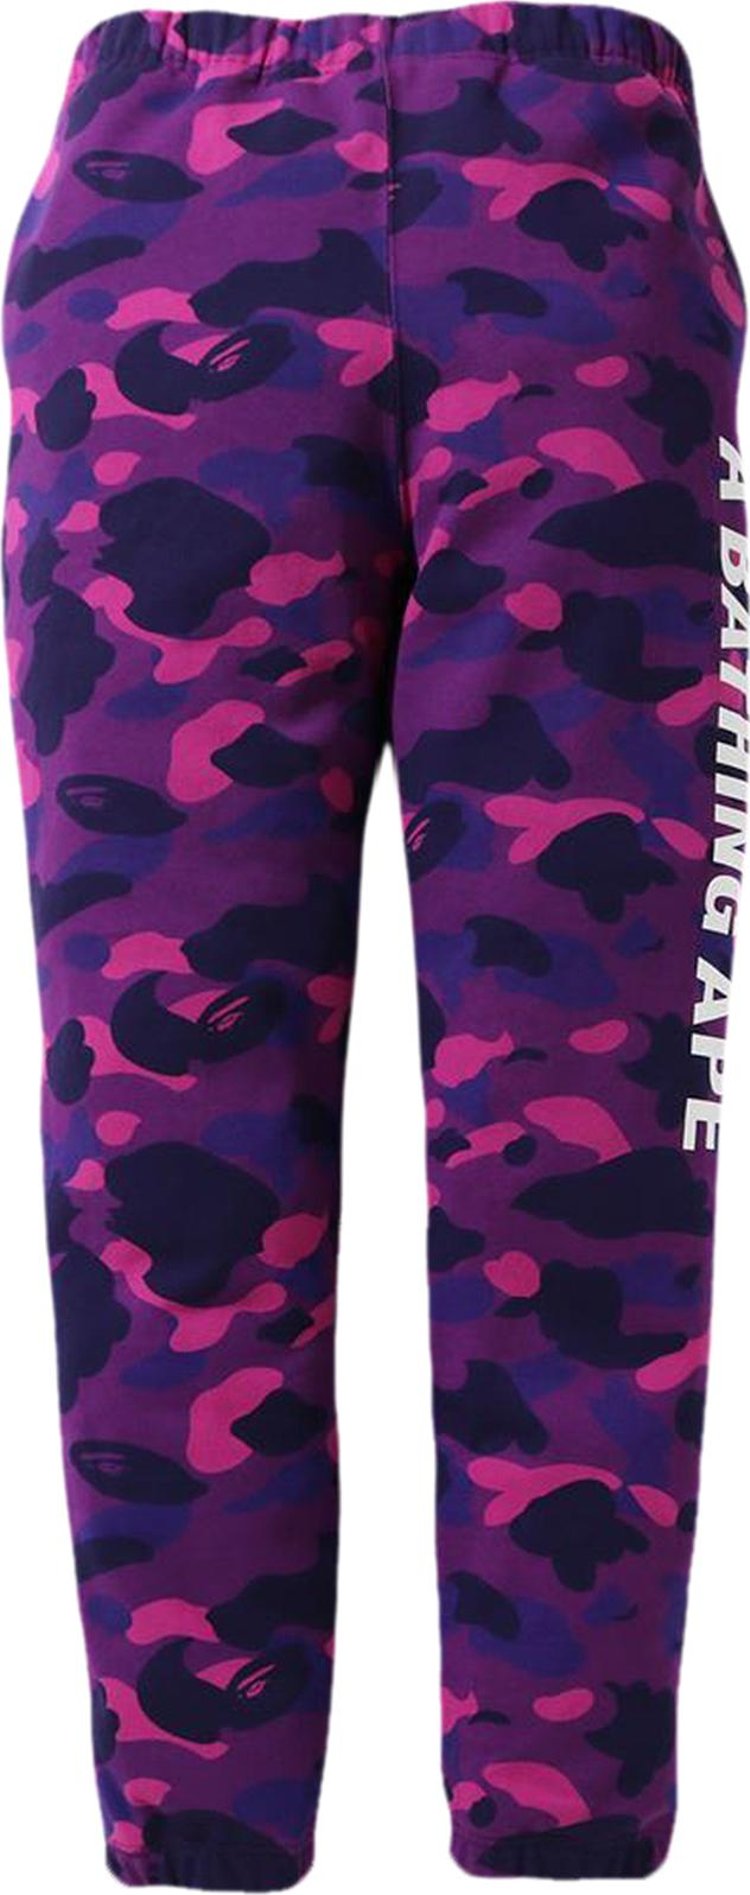 Buy BAPE Color Camo Sweat Pants 'Purple' - 1G80 152 021 PURPLE